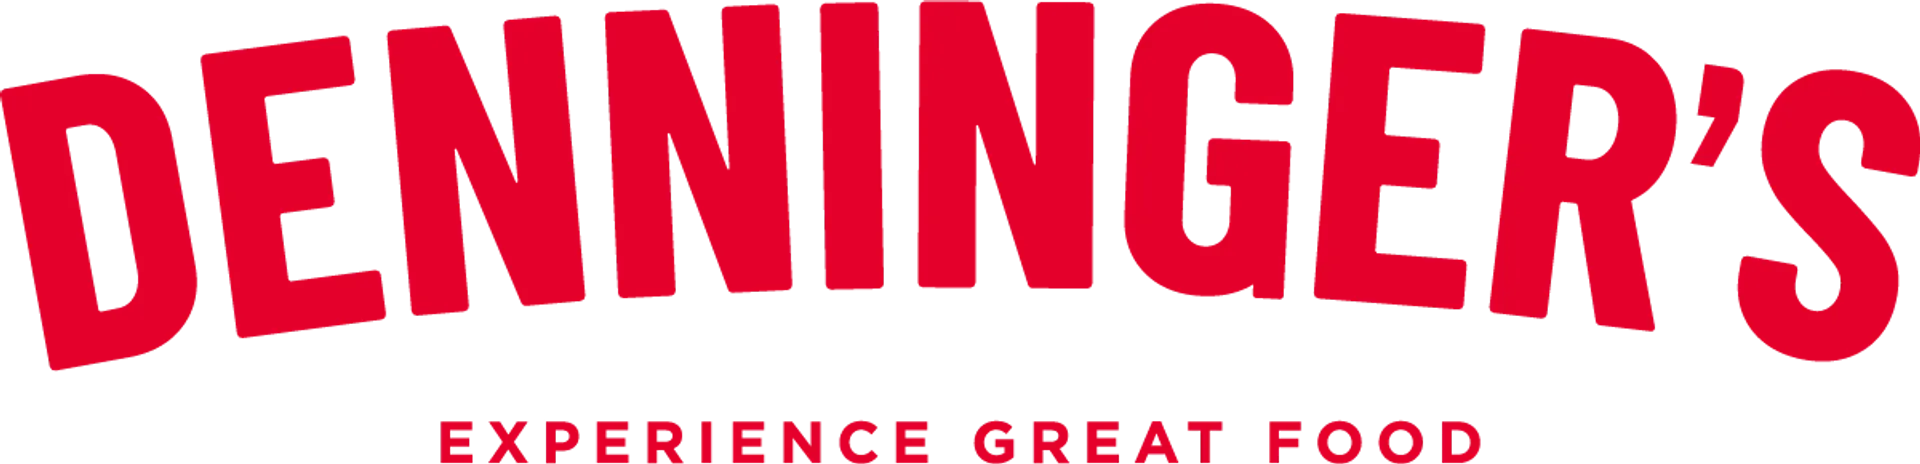 DENNINGER'S logo of current flyer